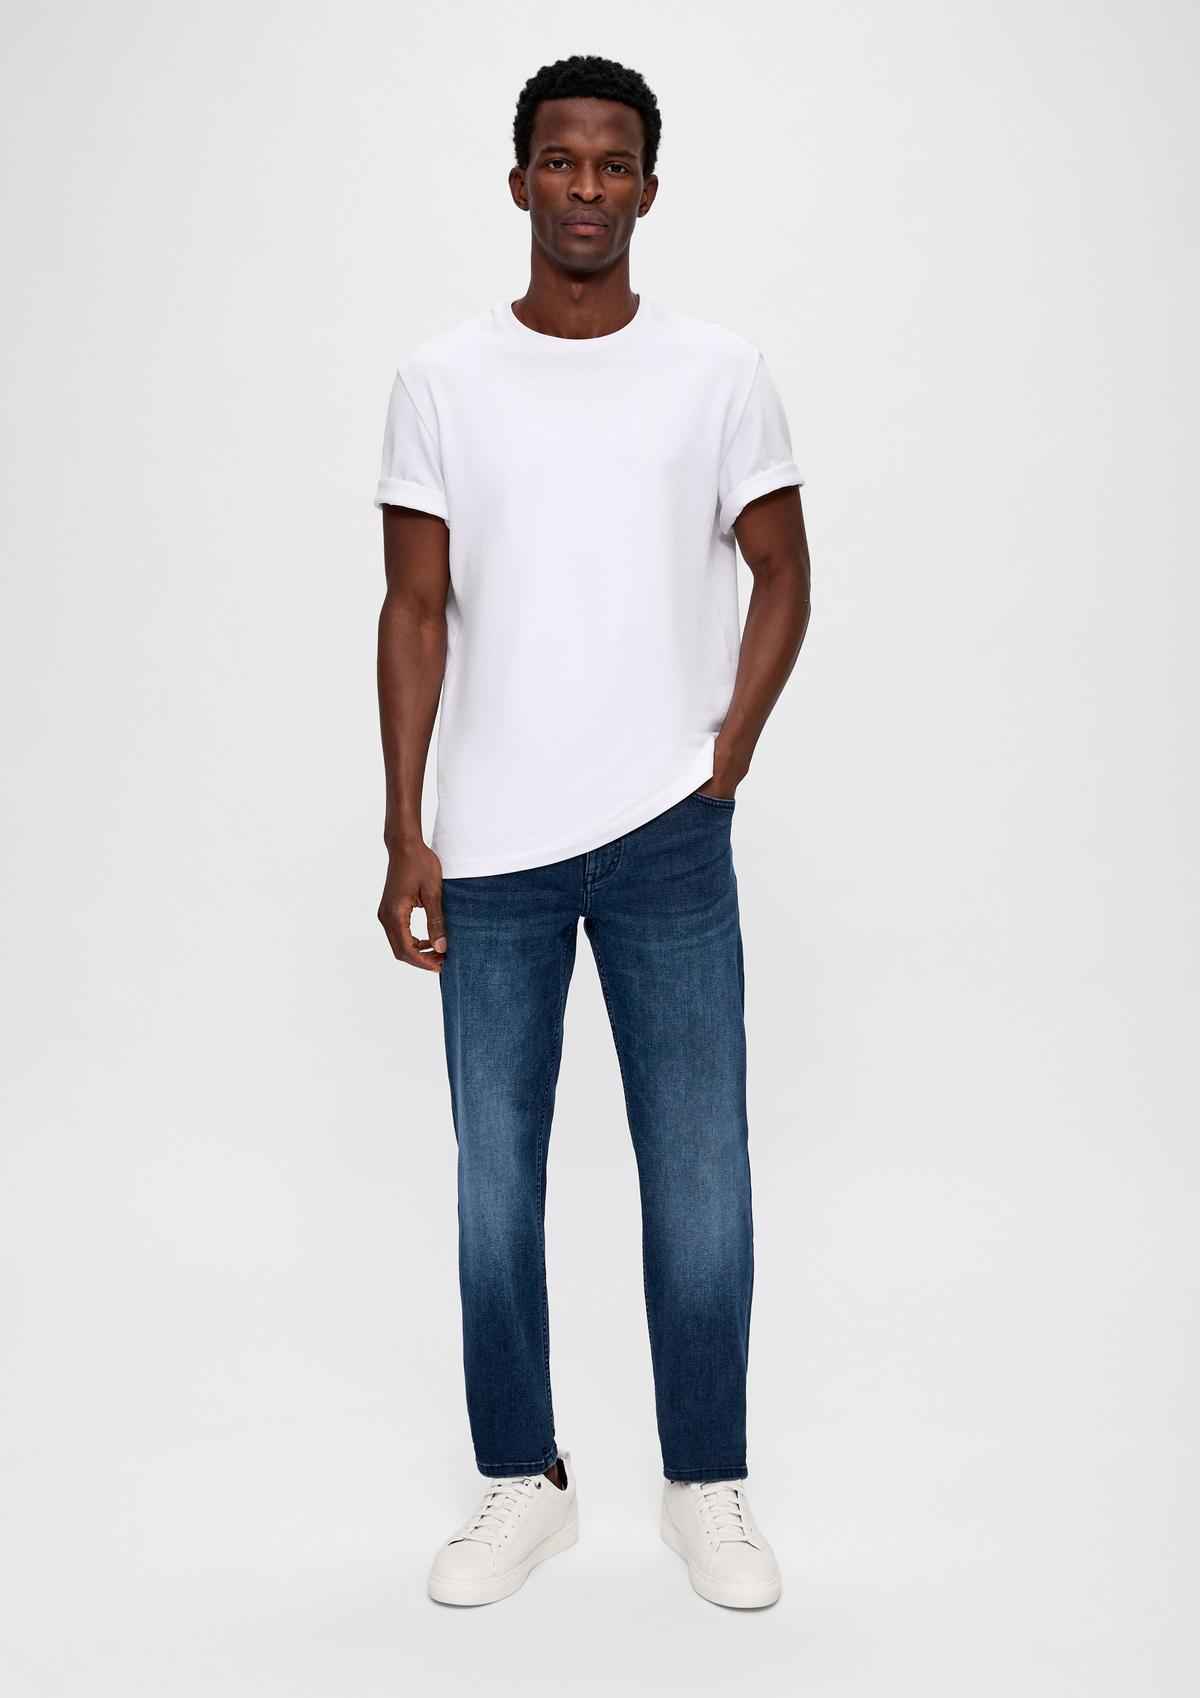 Jeans Nelio / Slim Fit / Mid Rise / Slim Leg 